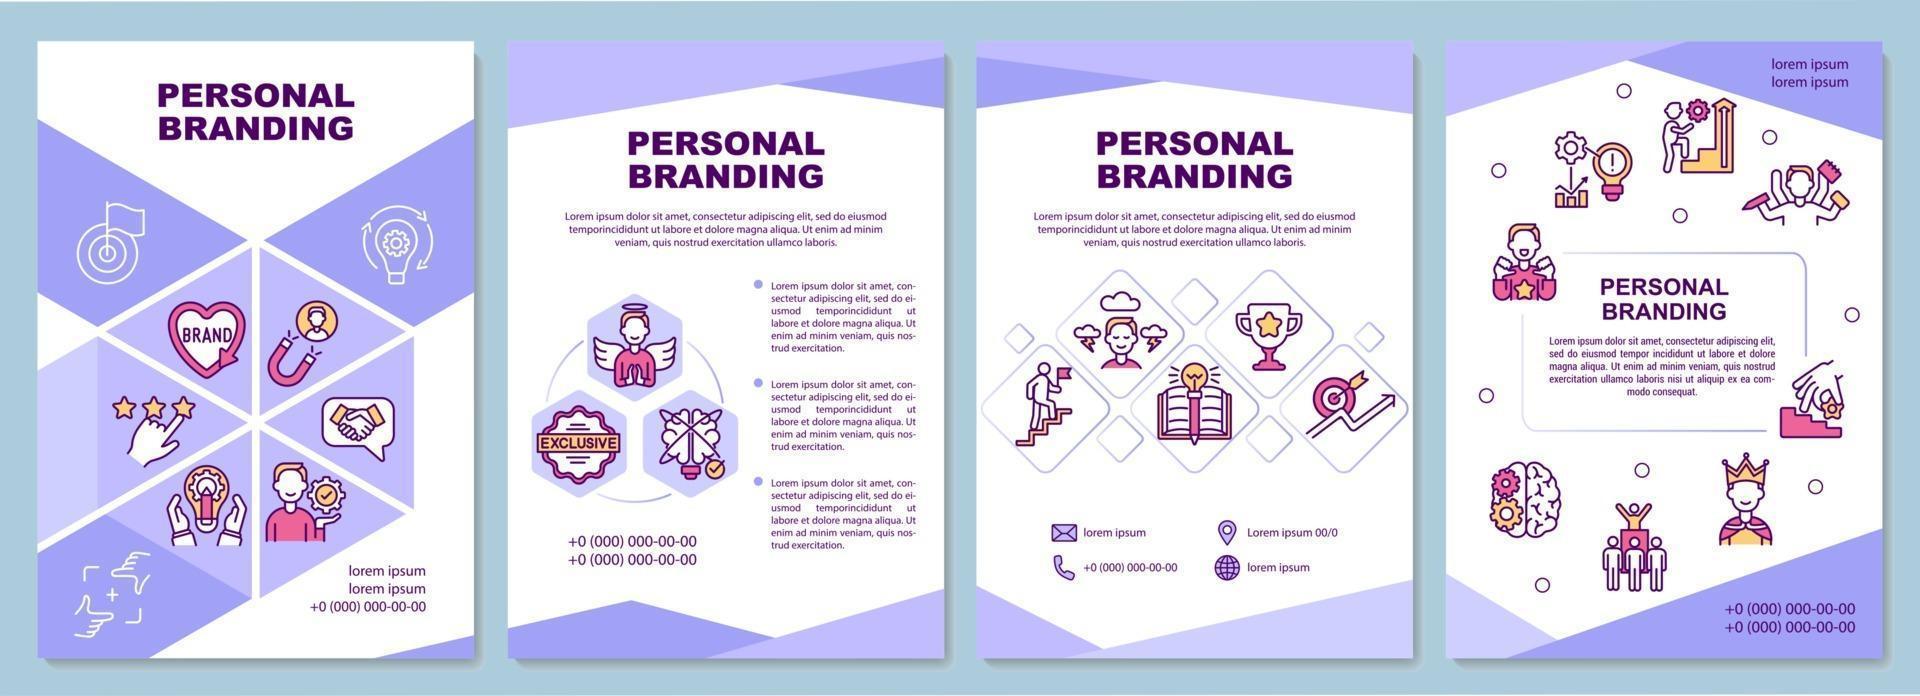 Personal branding brochure template vector